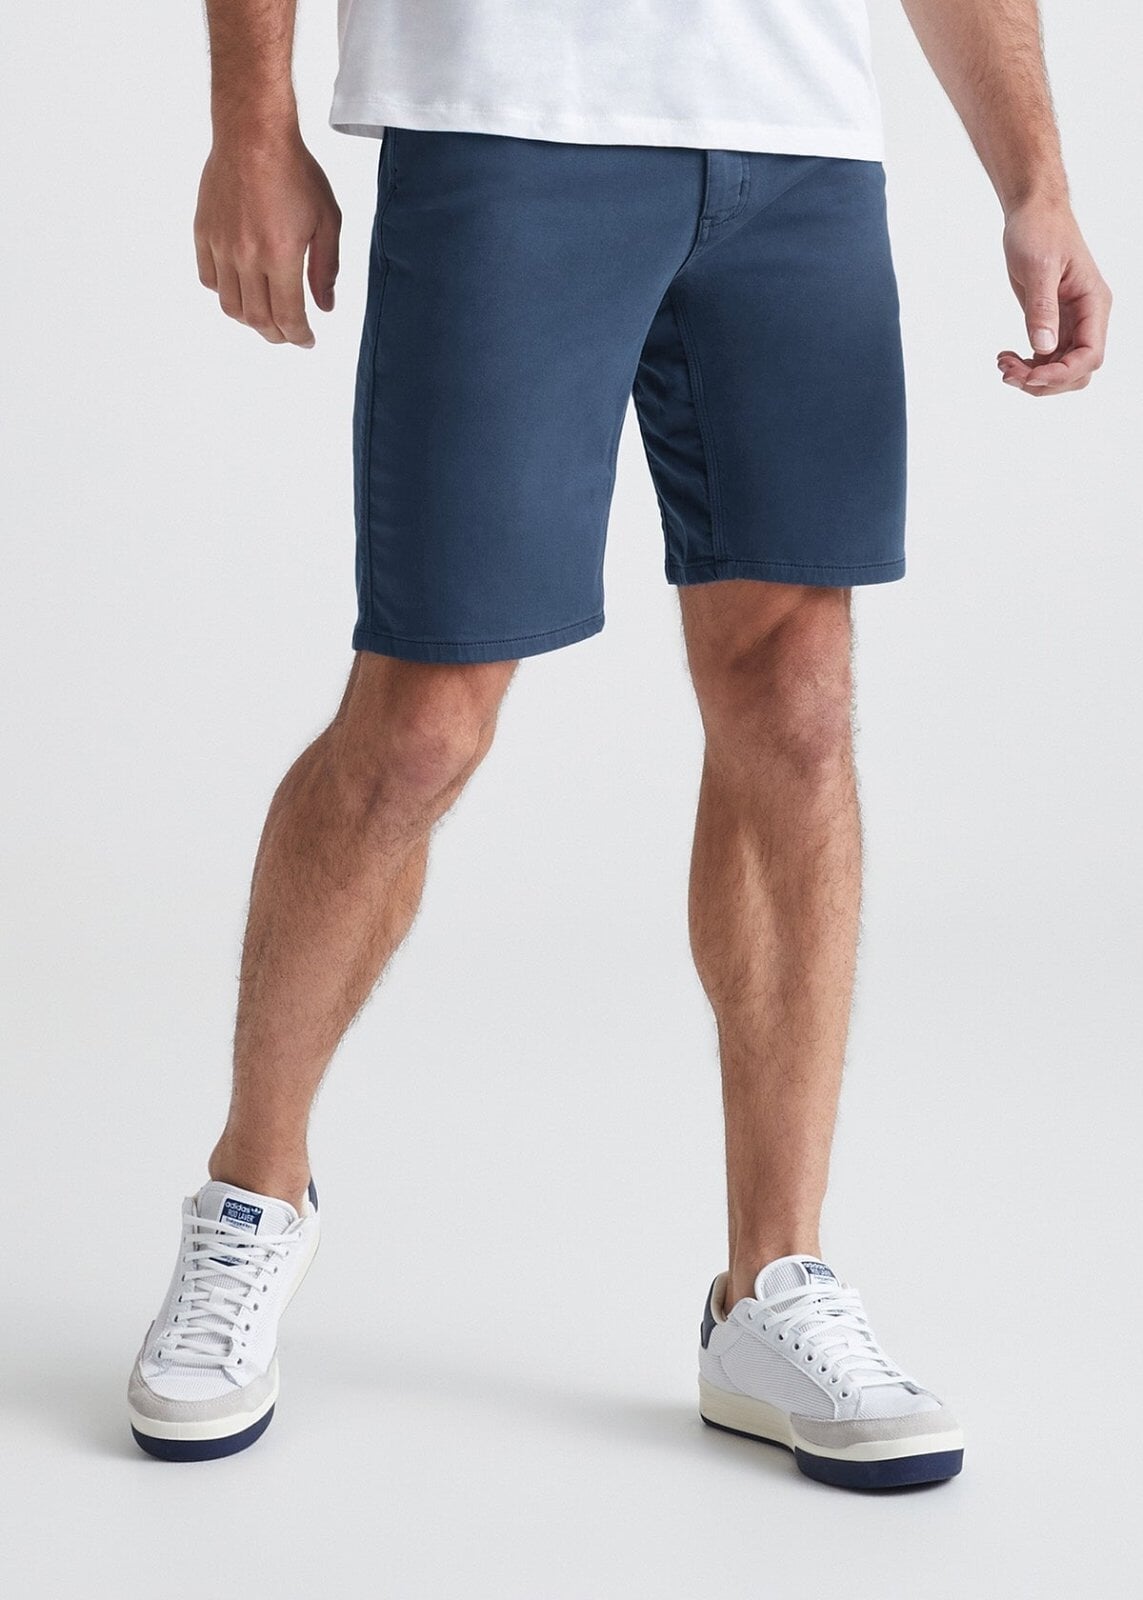 shorts – Tagged shorts